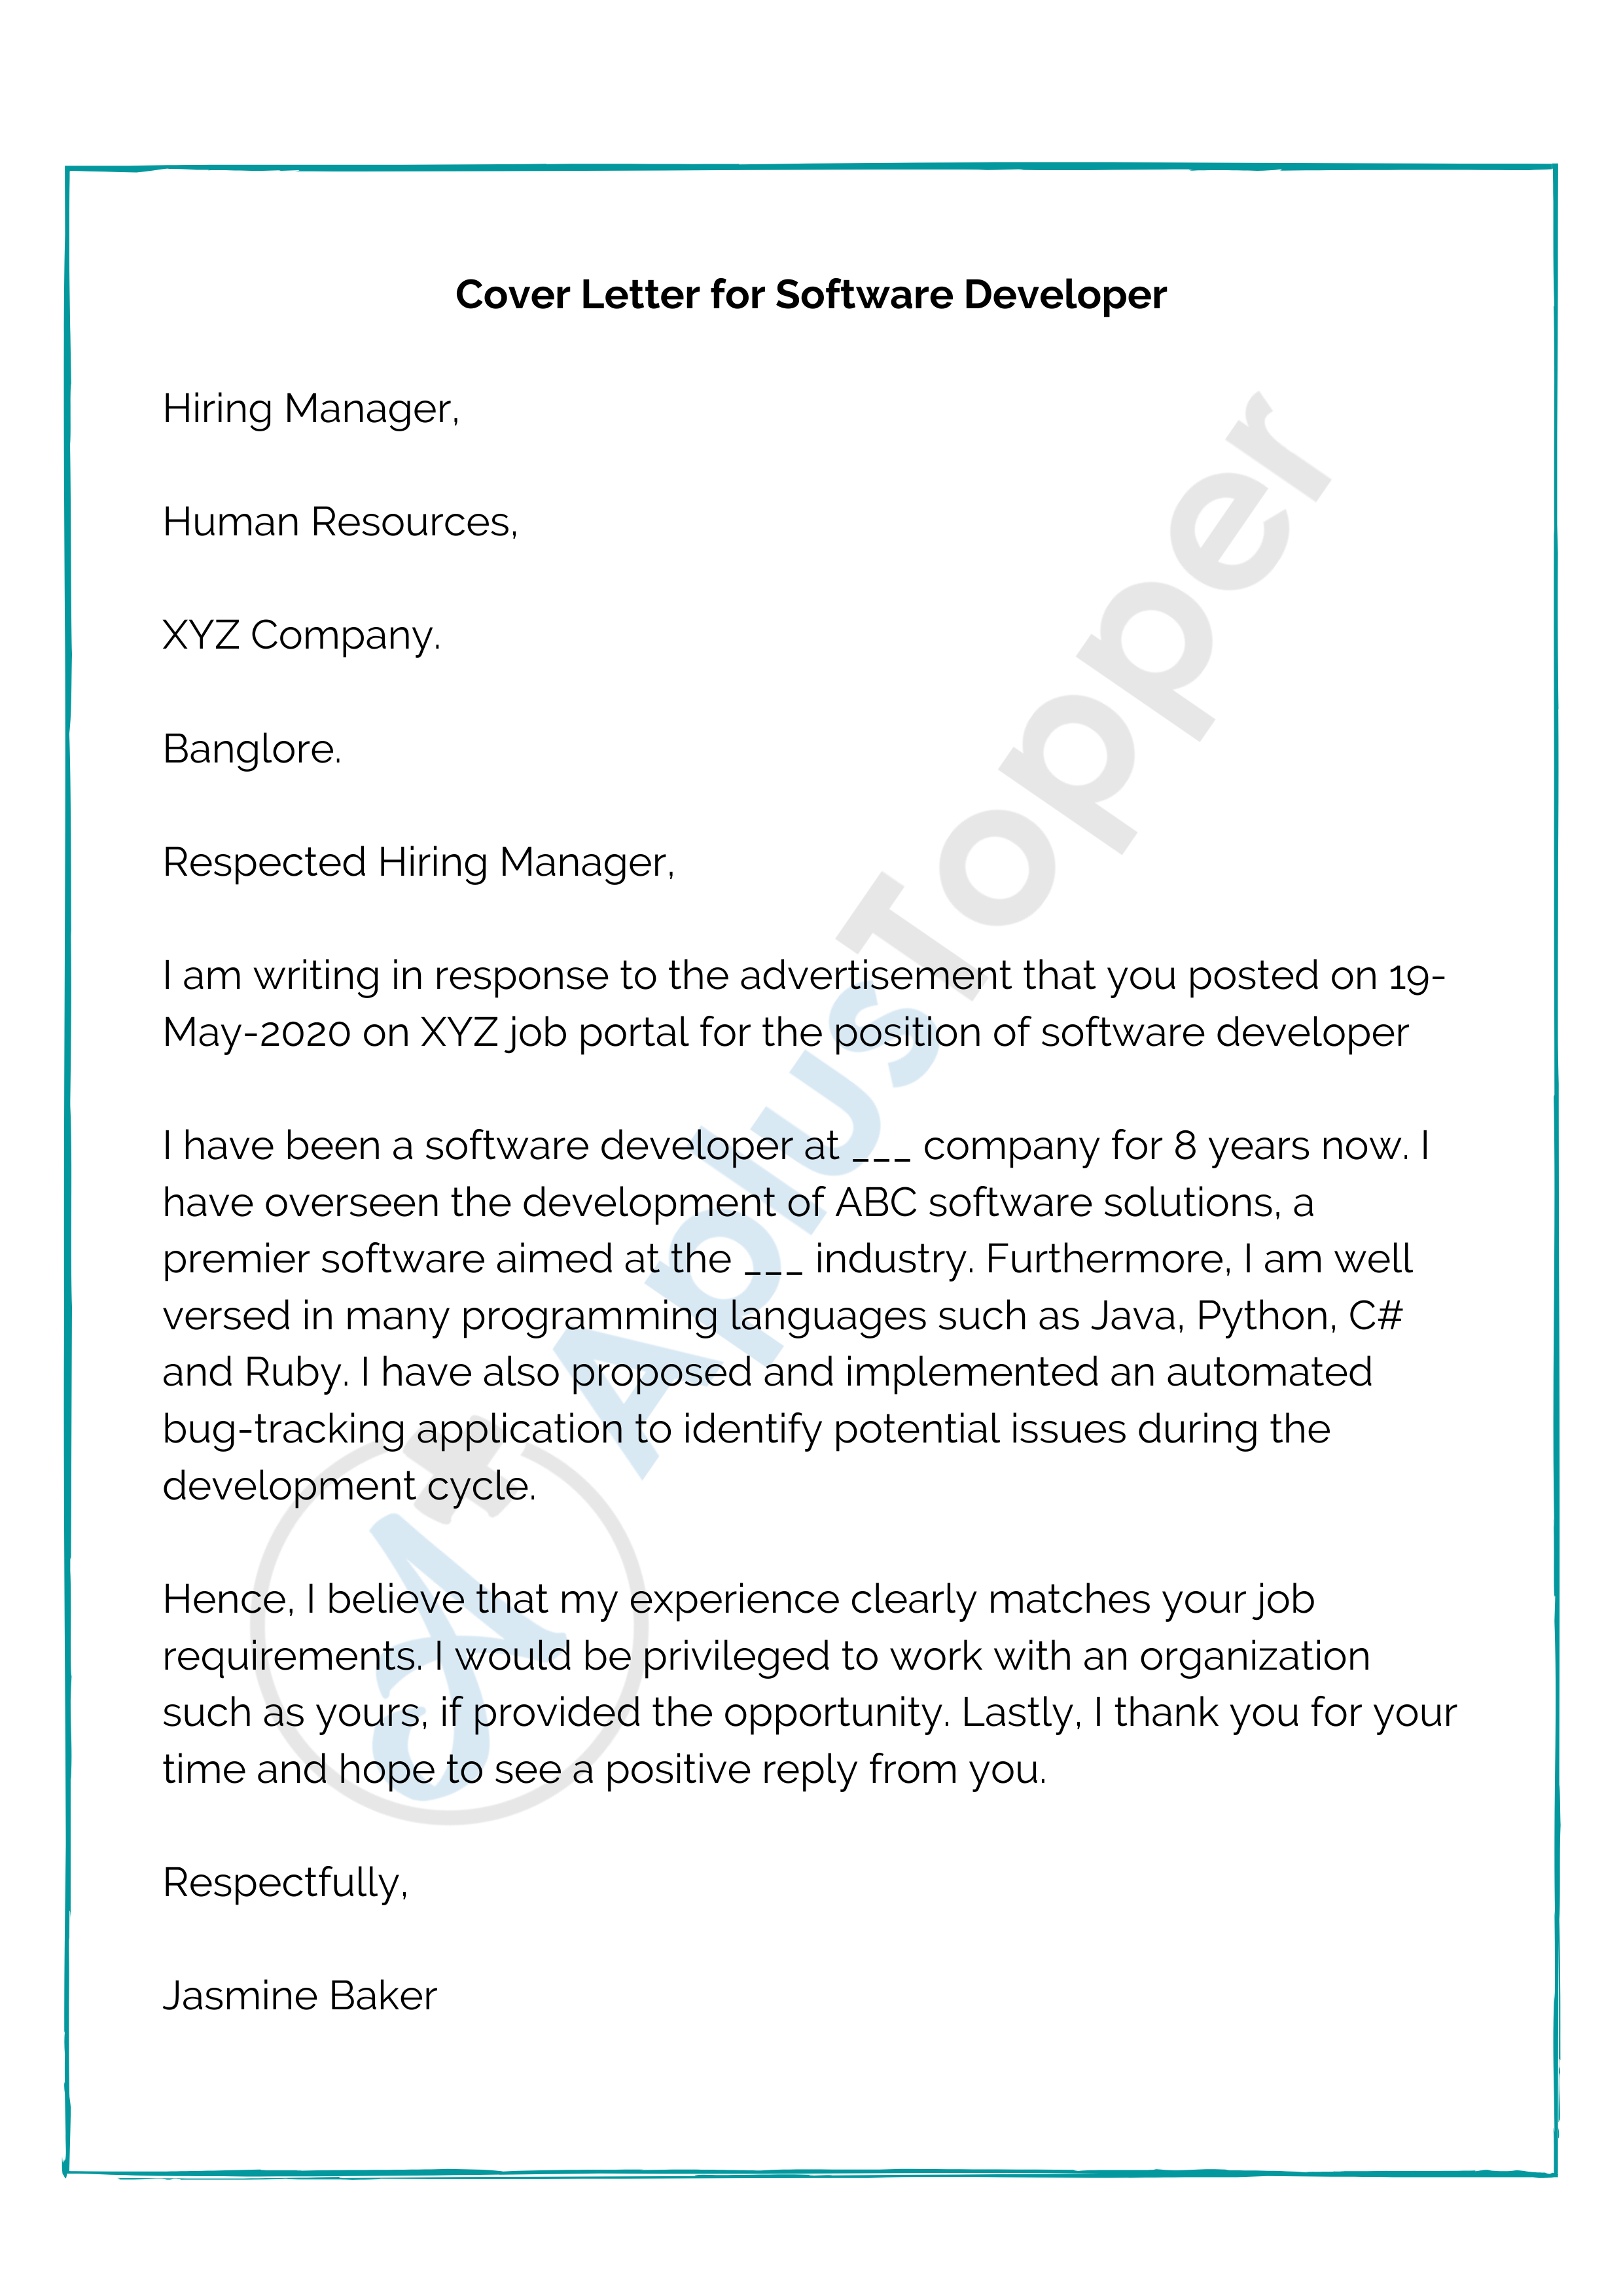 cover letter sample for job application software developer